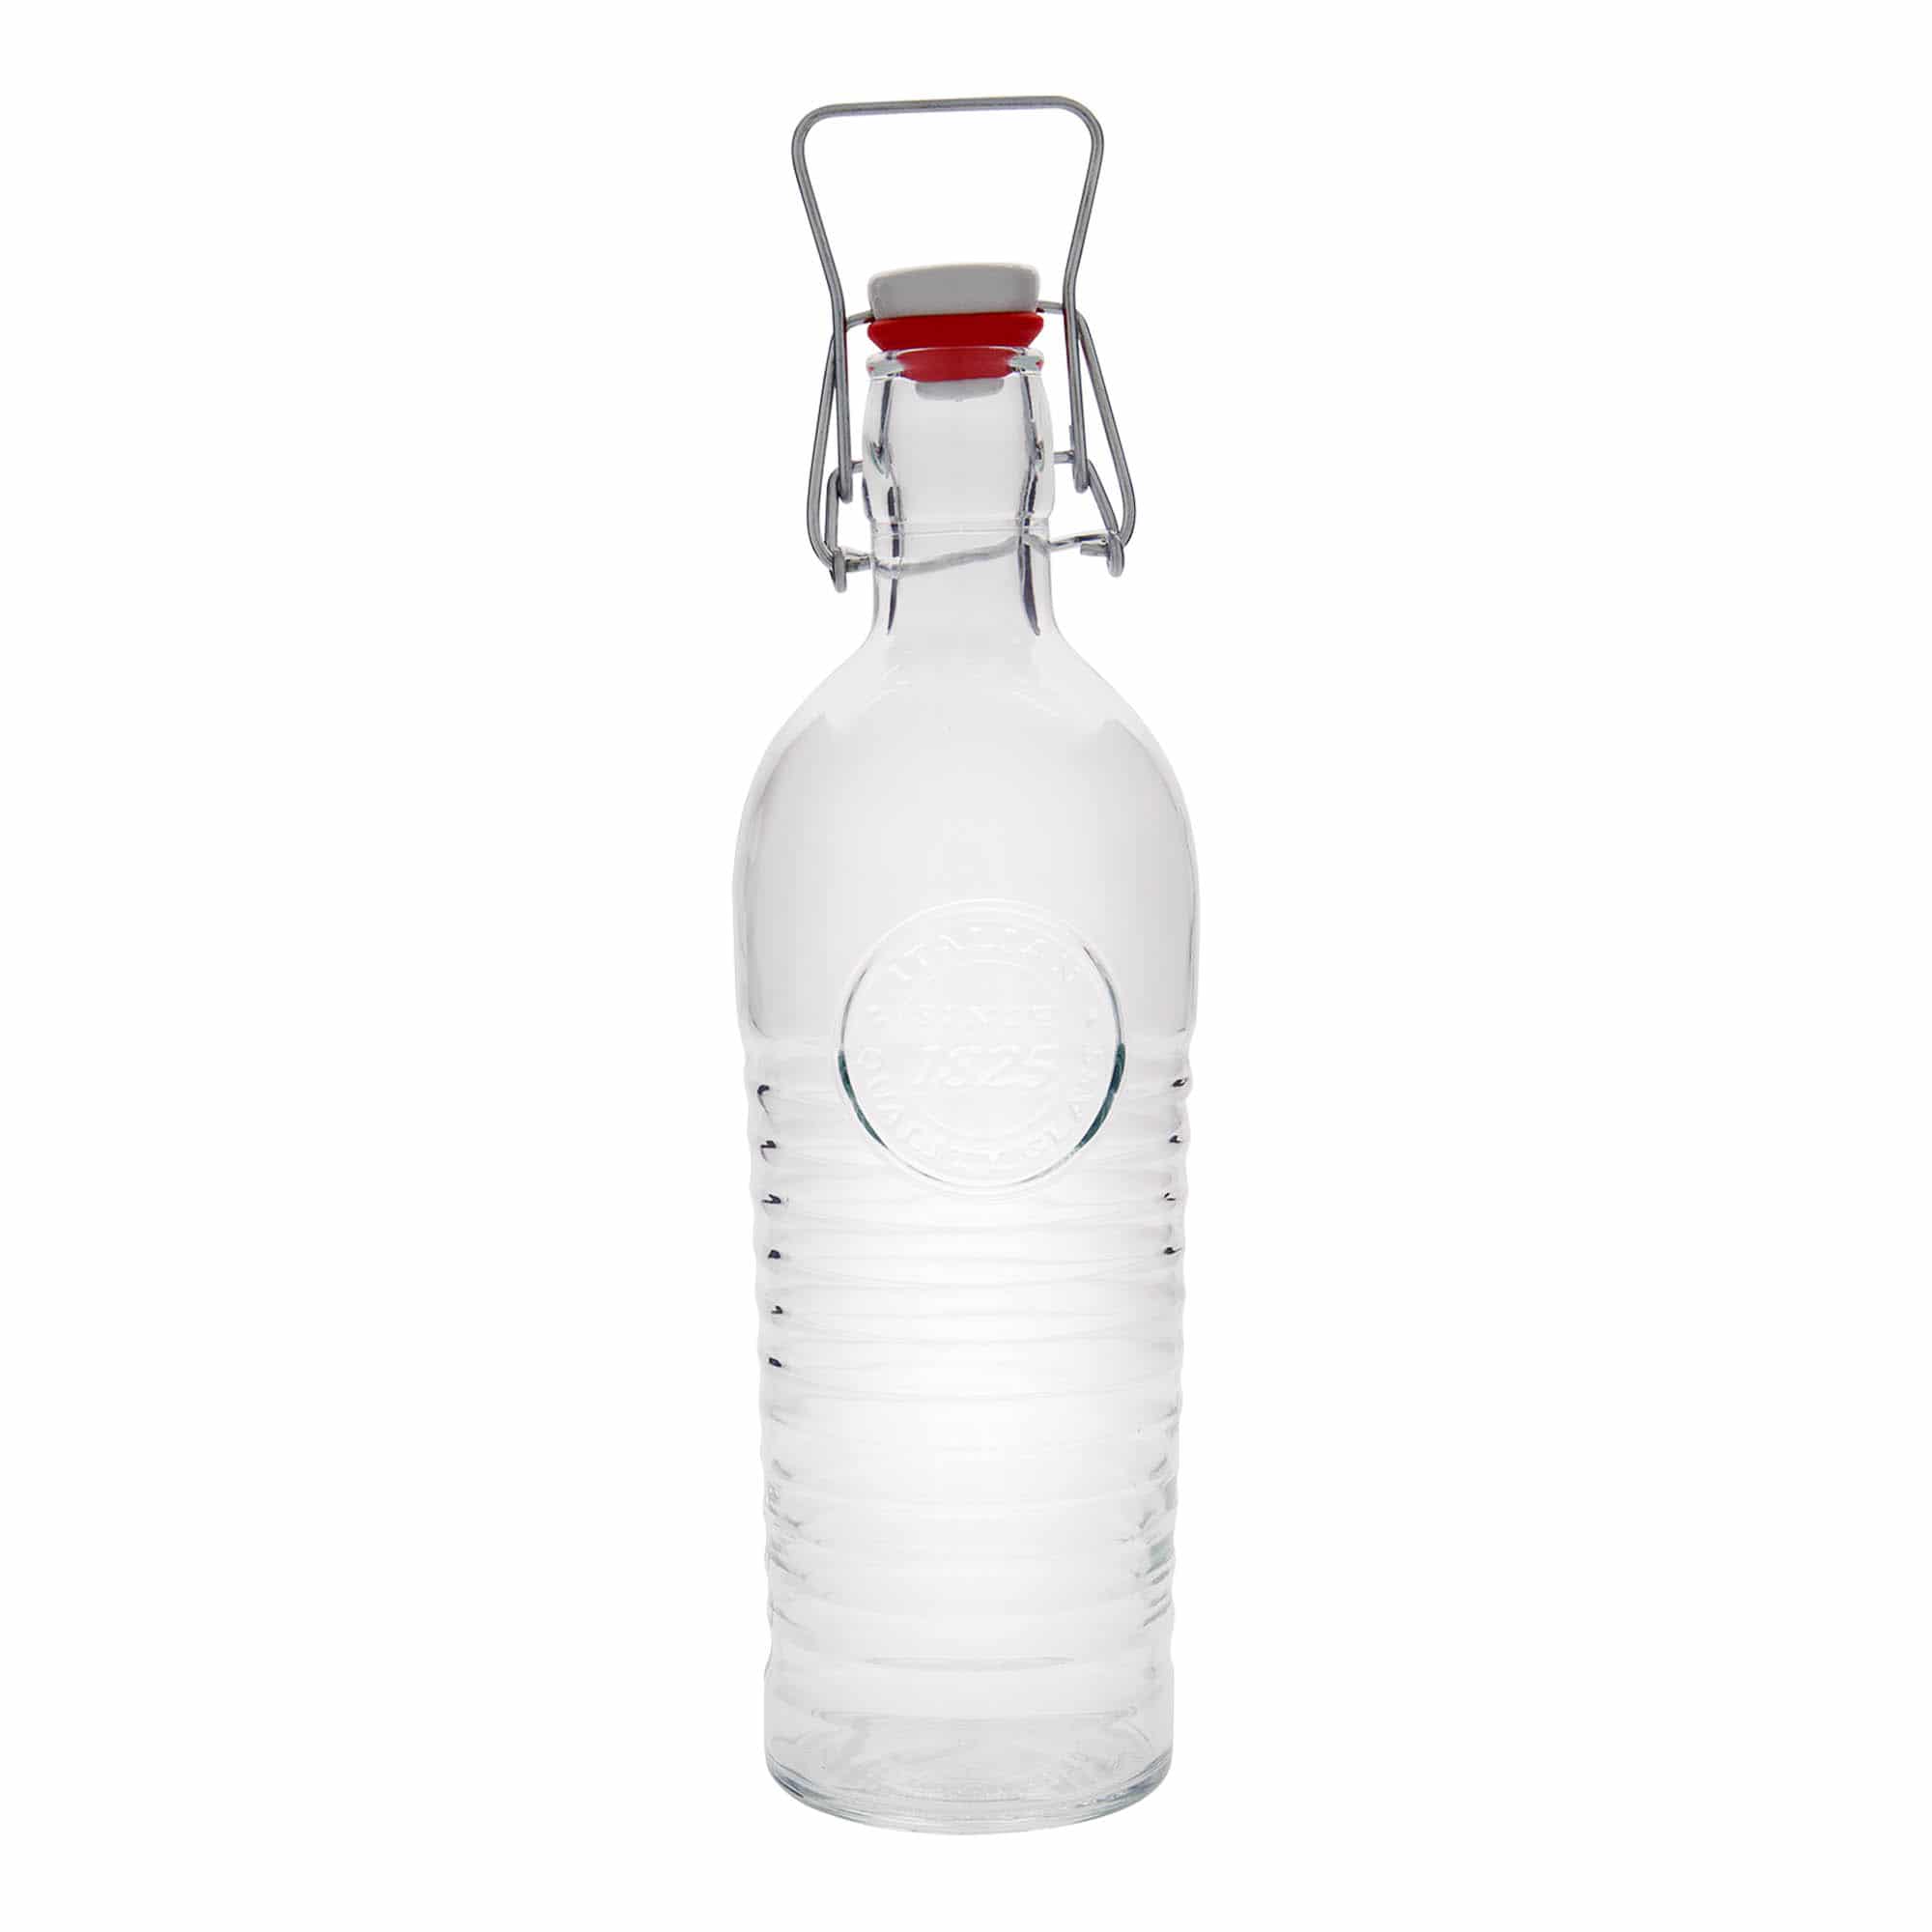 1200 ml-es üvegpalack 'Officina 1825', szájnyílás: csatos zár